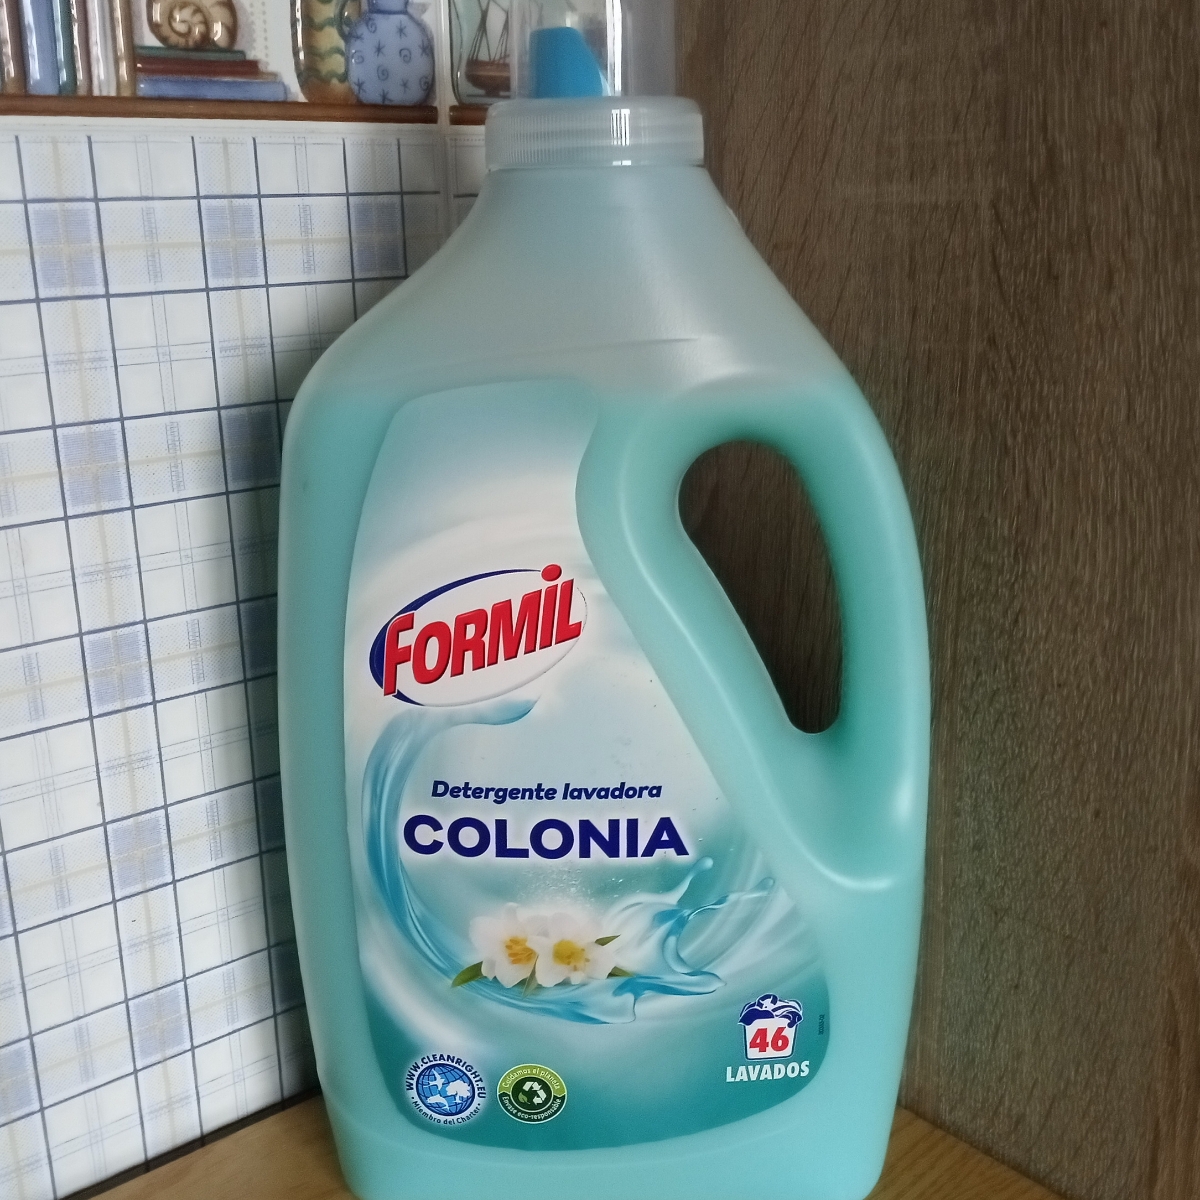 Formil Detergente Lavadora Colonia Review | abillion